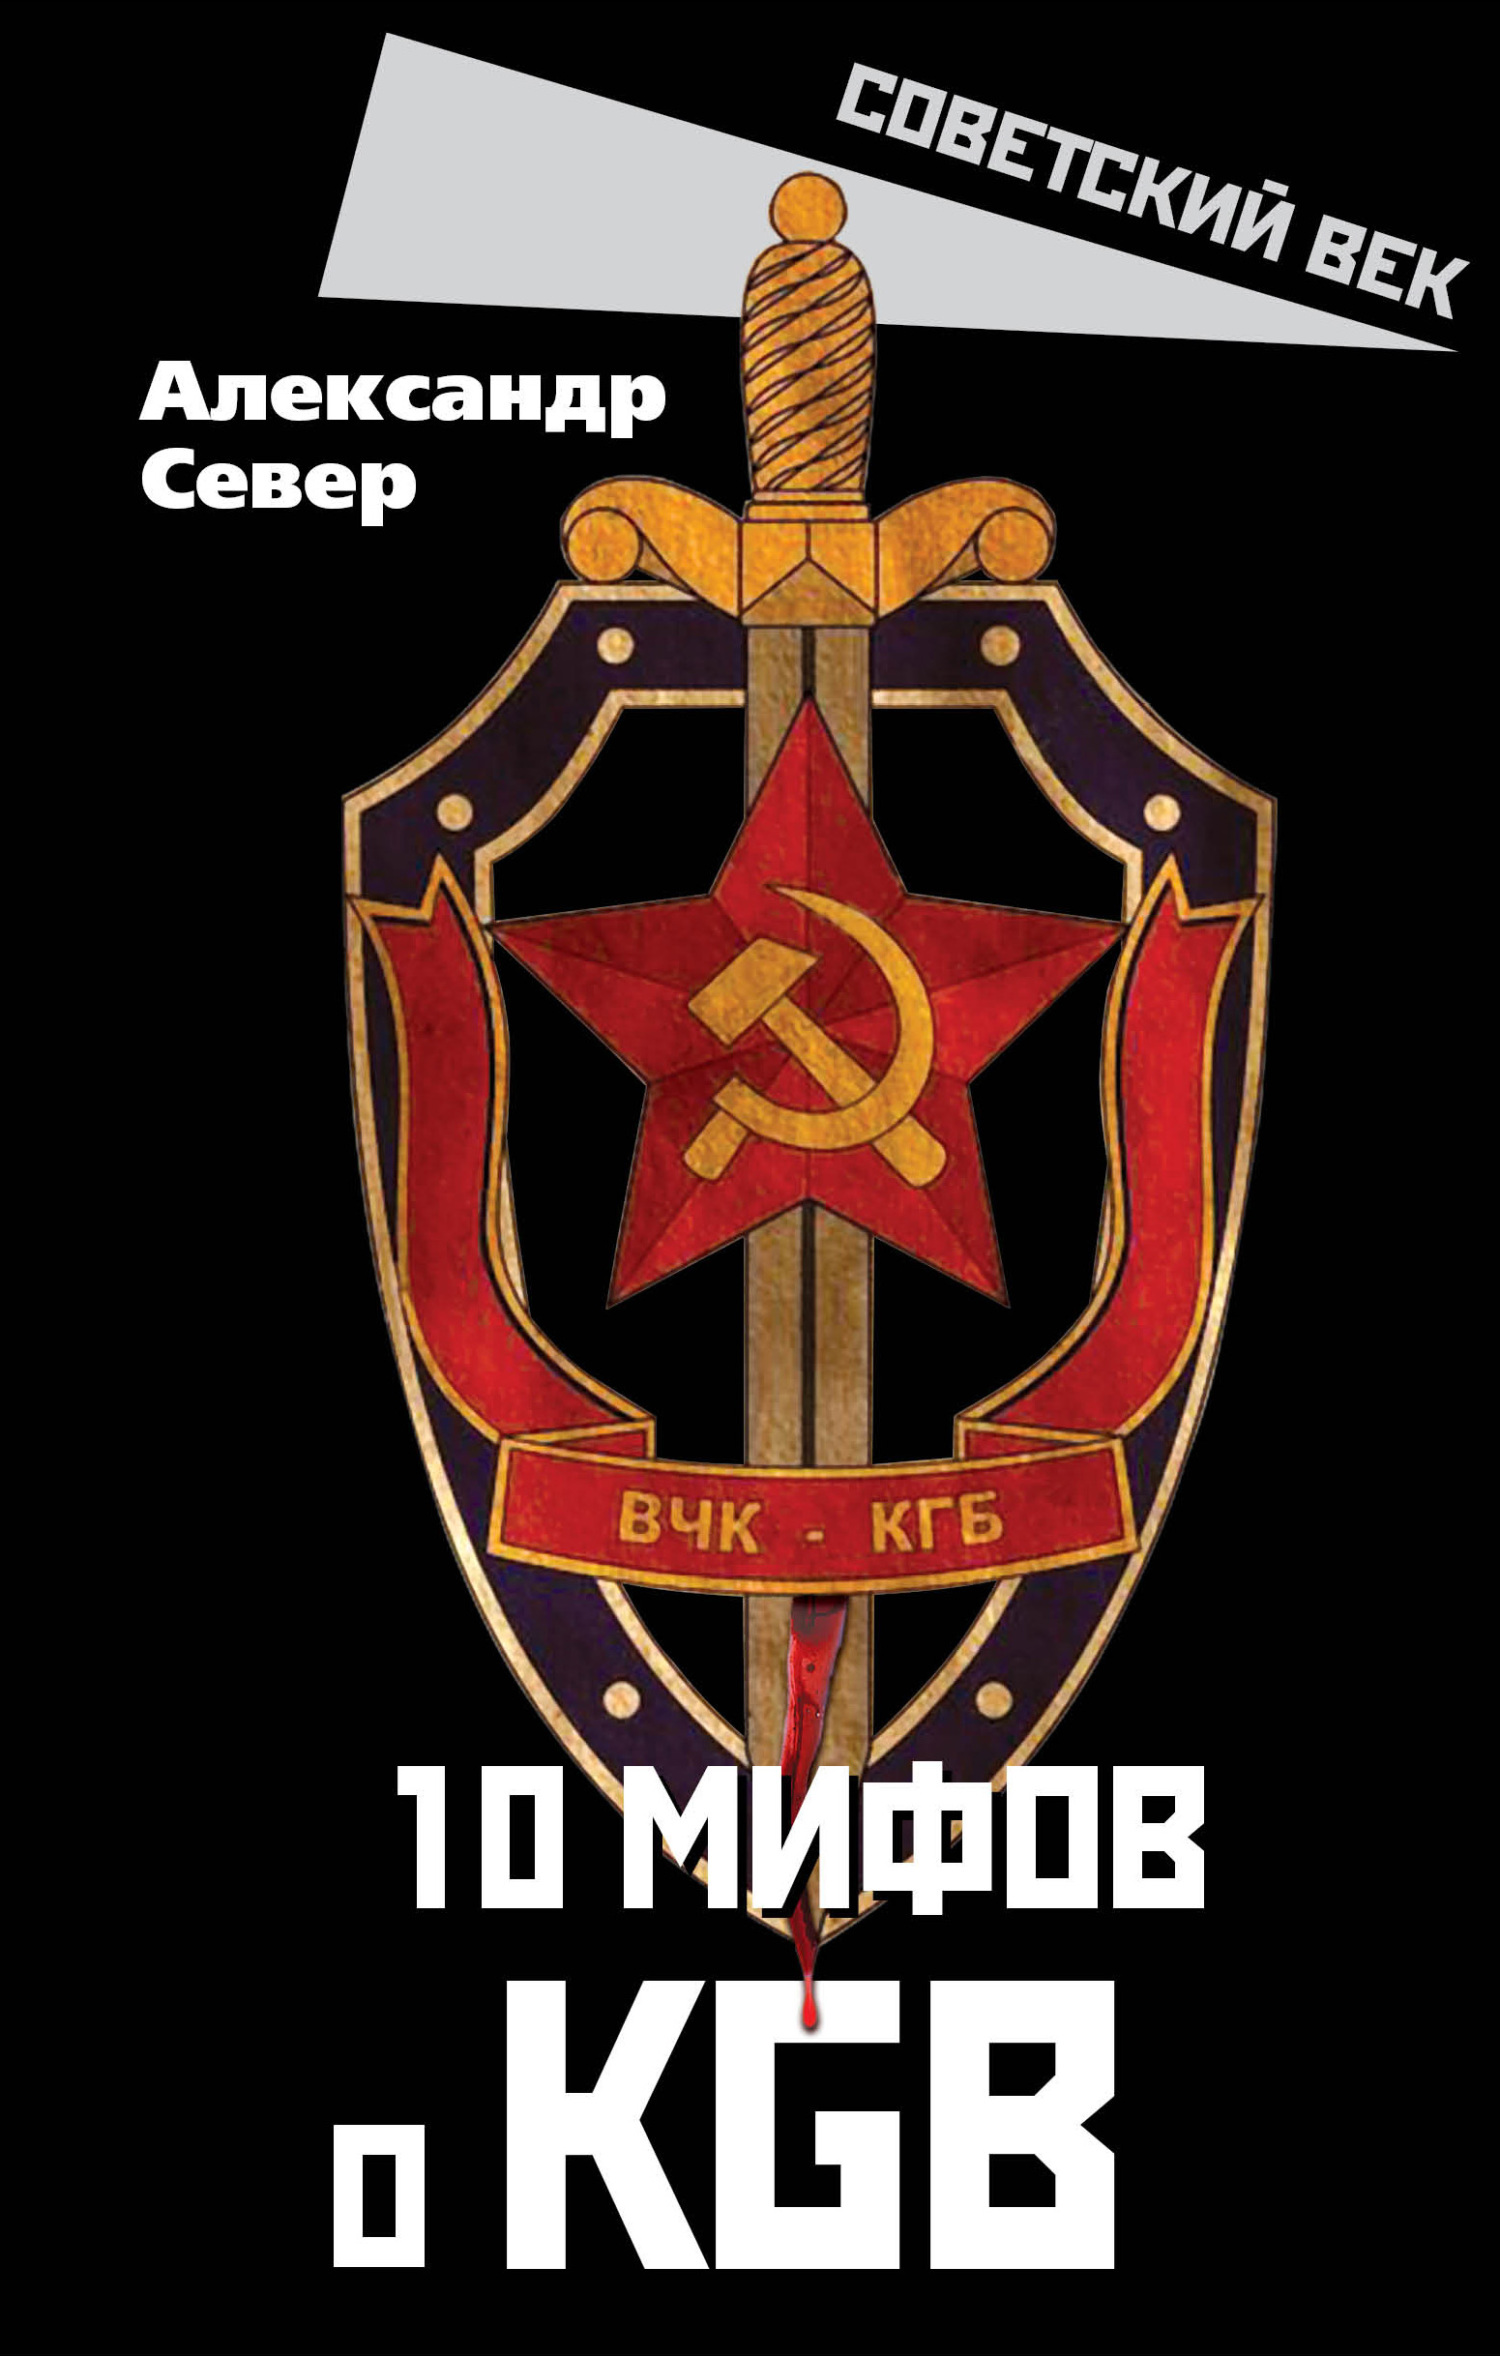 Книга 10 мифов о КГБ из серии , созданная Александр Север, может относится к жанру Документальная литература. Стоимость электронной книги 10 мифов о КГБ с идентификатором 17194656 составляет 200.00 руб.